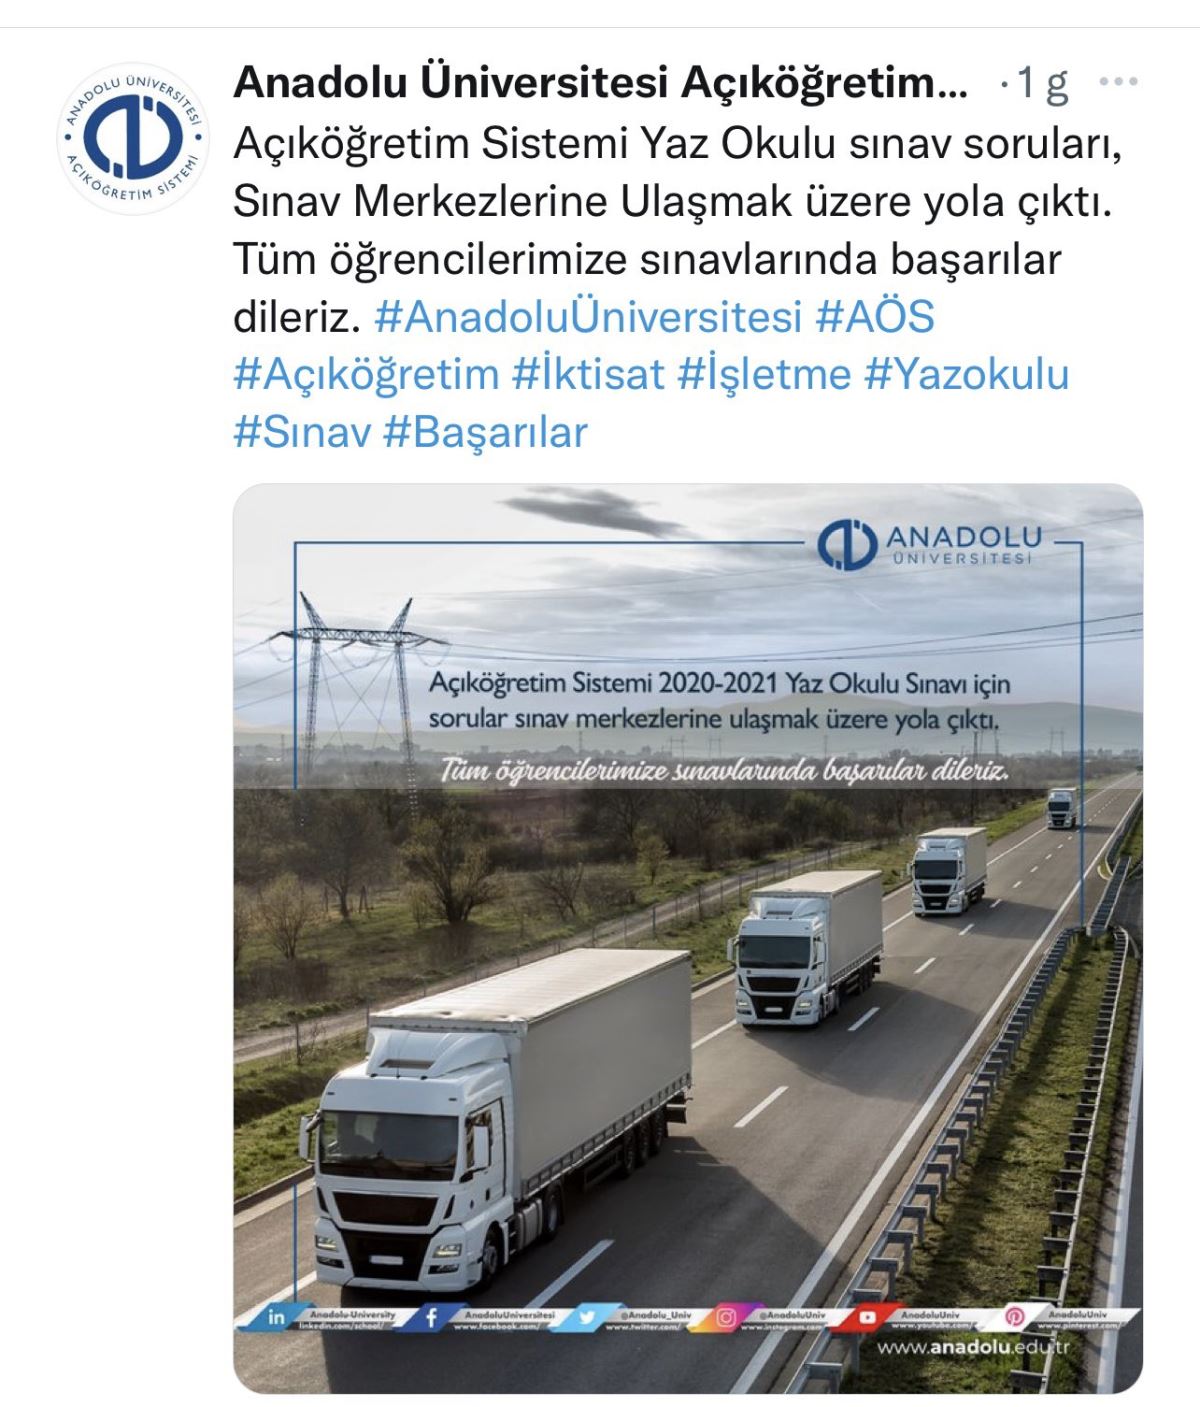 Anadolu Üniversitesi, stok görüntü paylaşarak, 'sorular yola çıktı' dedi